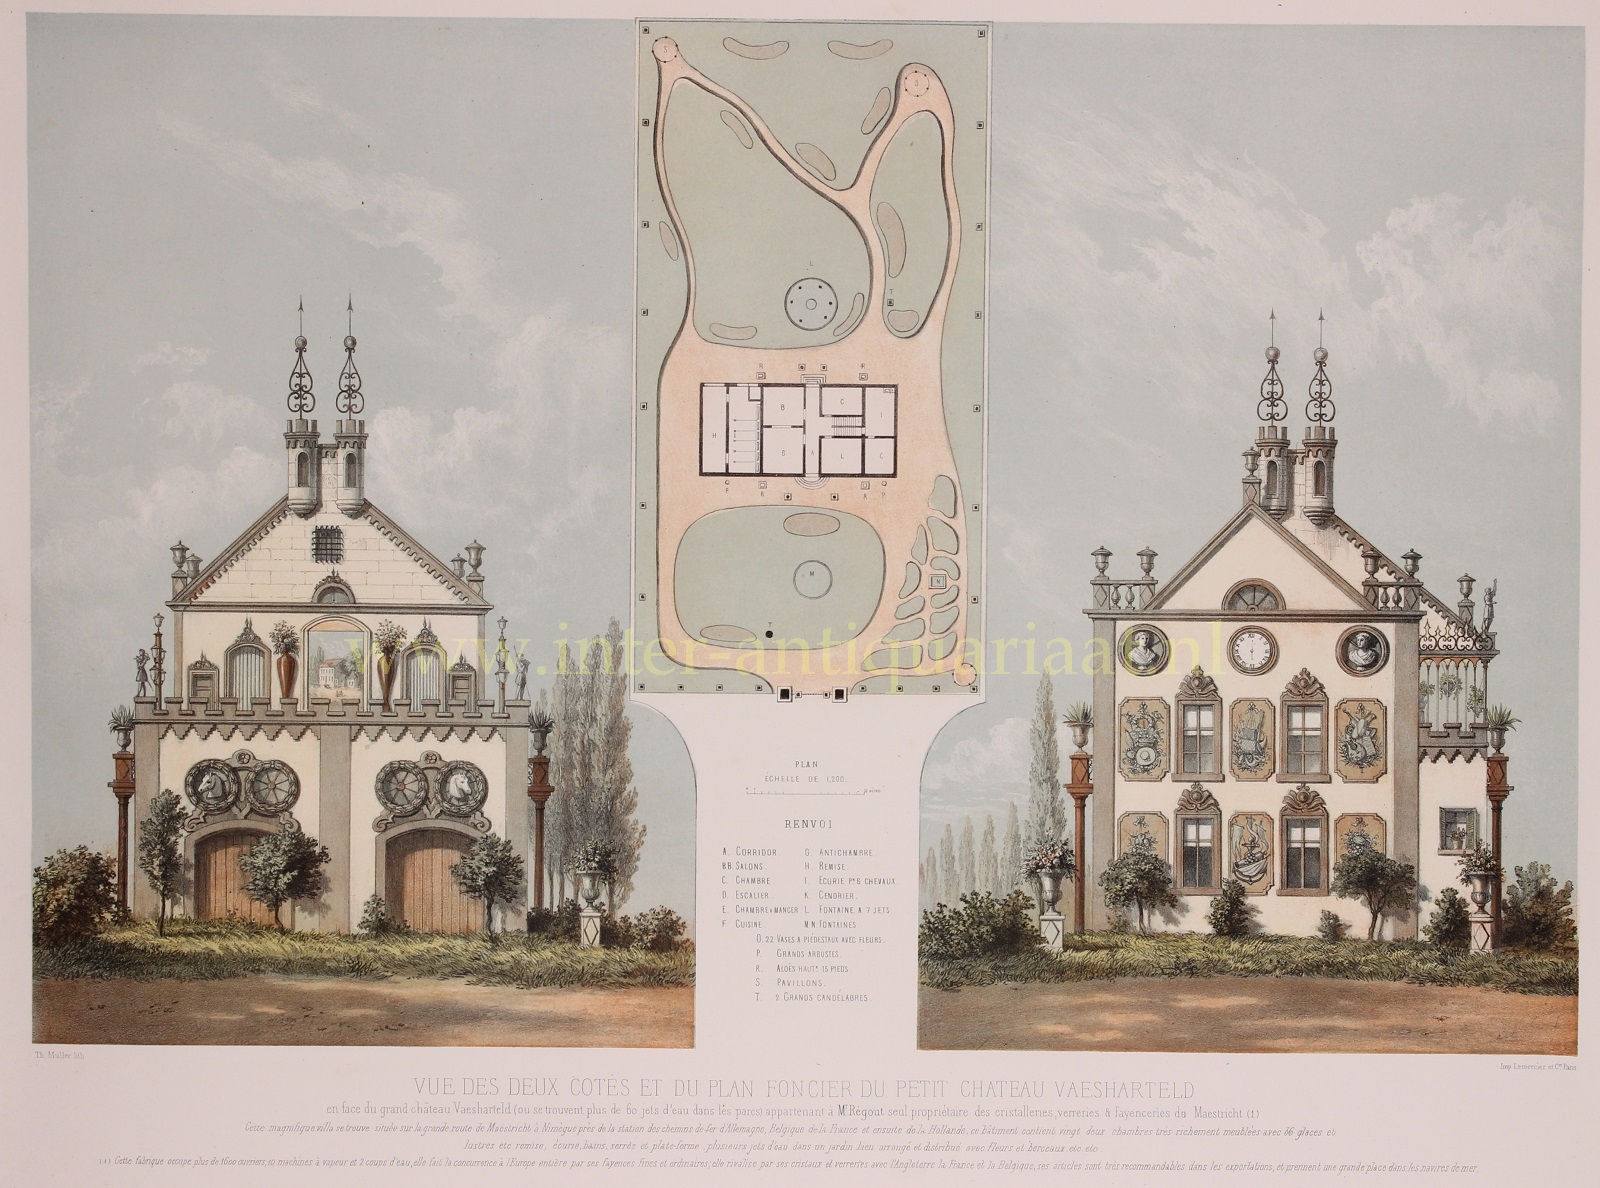  - Klein Vaeshartelt (Maastricht), side views - Theodore Mller + Lemercier, 1863